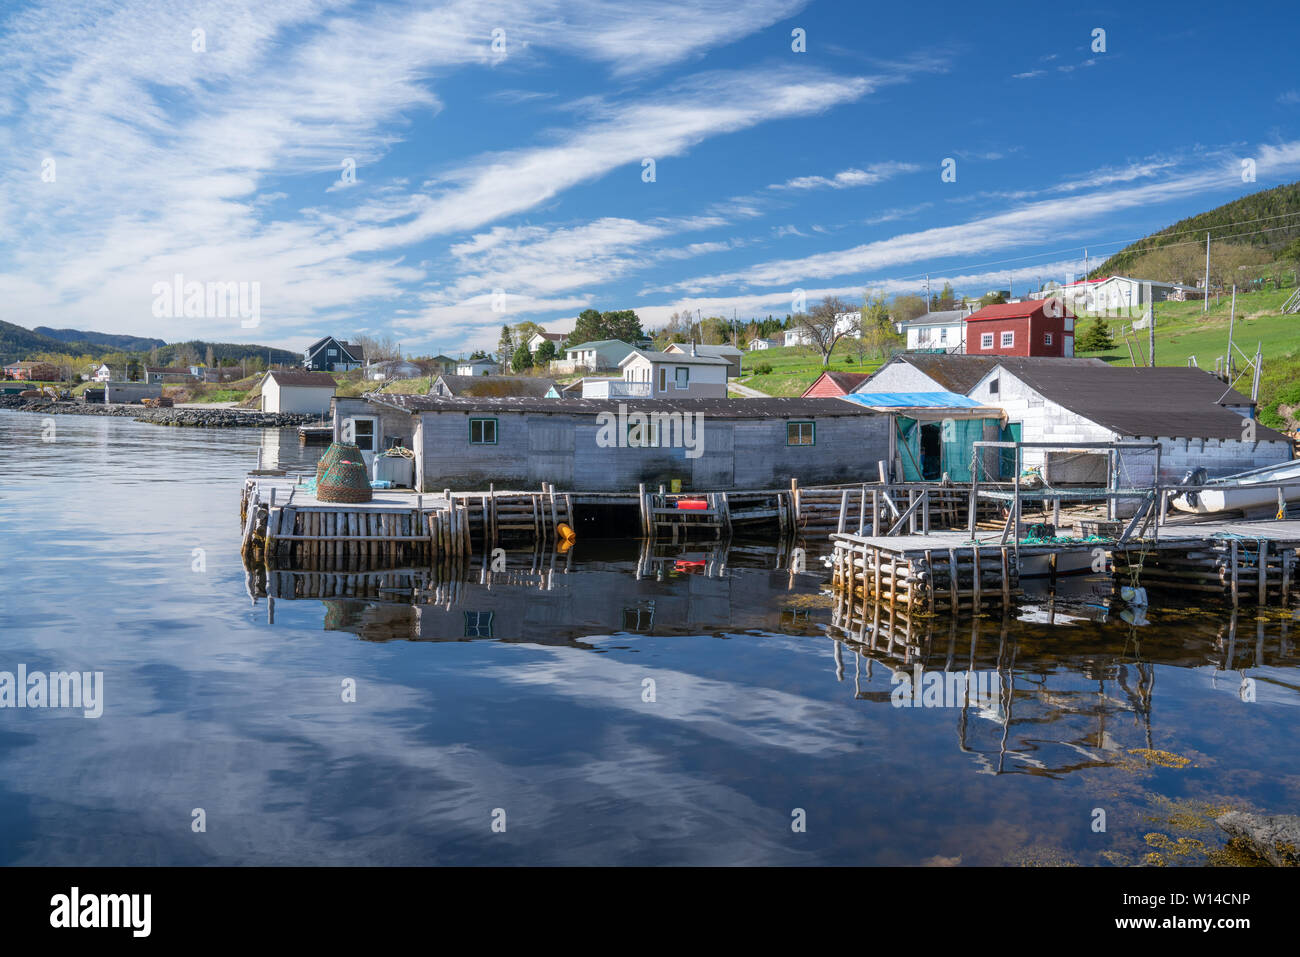 Port de Woody Point Village de pêcheurs au Gros-Morne, Terre-Neuve, Canada Banque D'Images